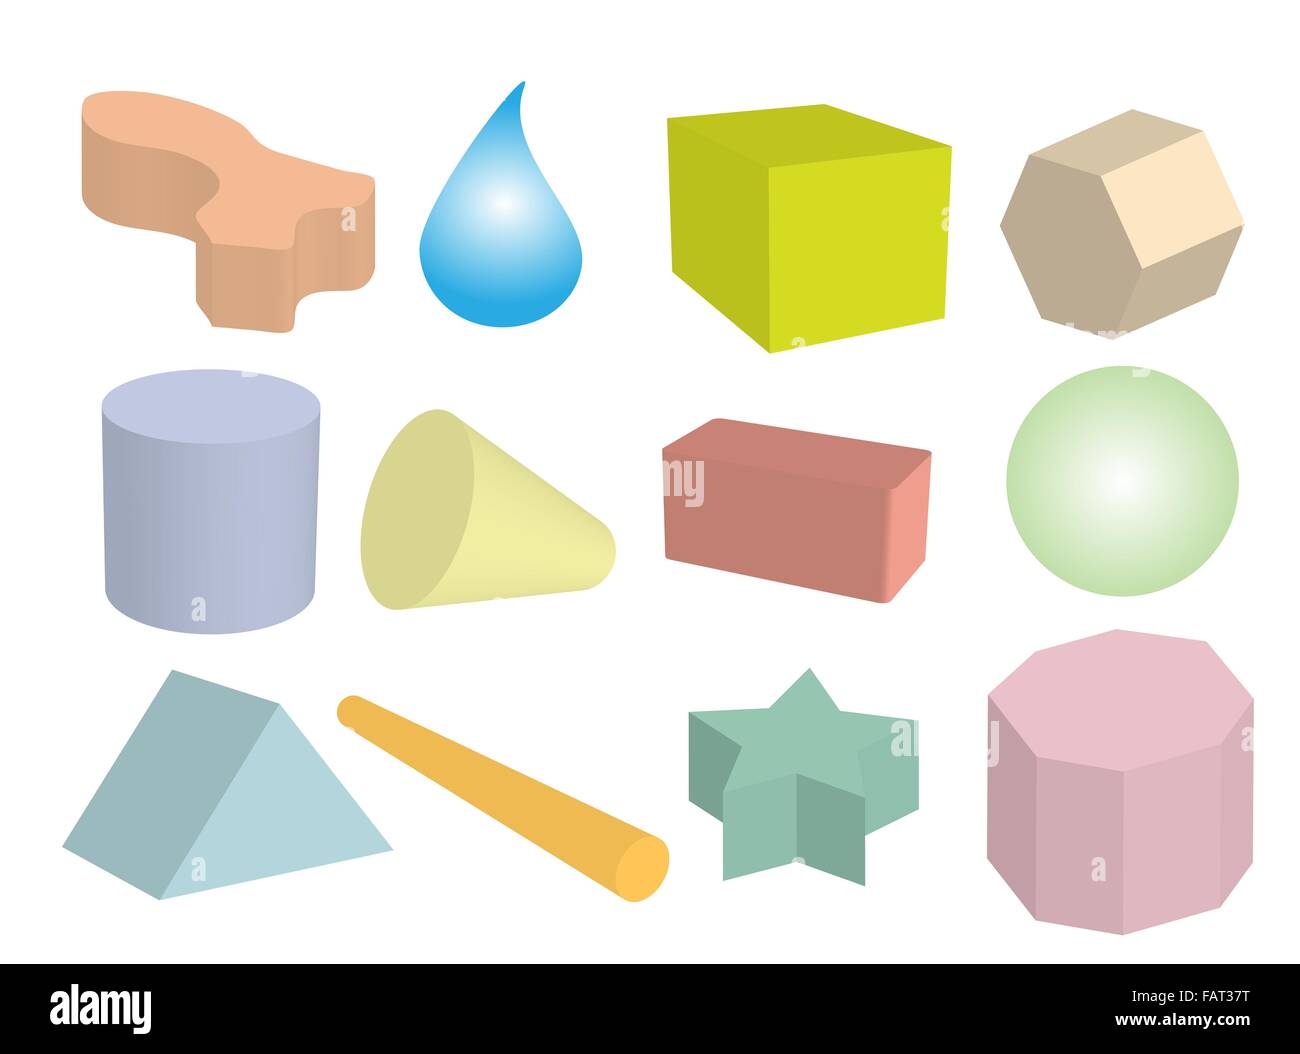 Forma geometrica, un gli oggetti o le figure create in una sfera, Triangolo, esagono, cilindro, il cono, la discesa e il cubo Foto Stock